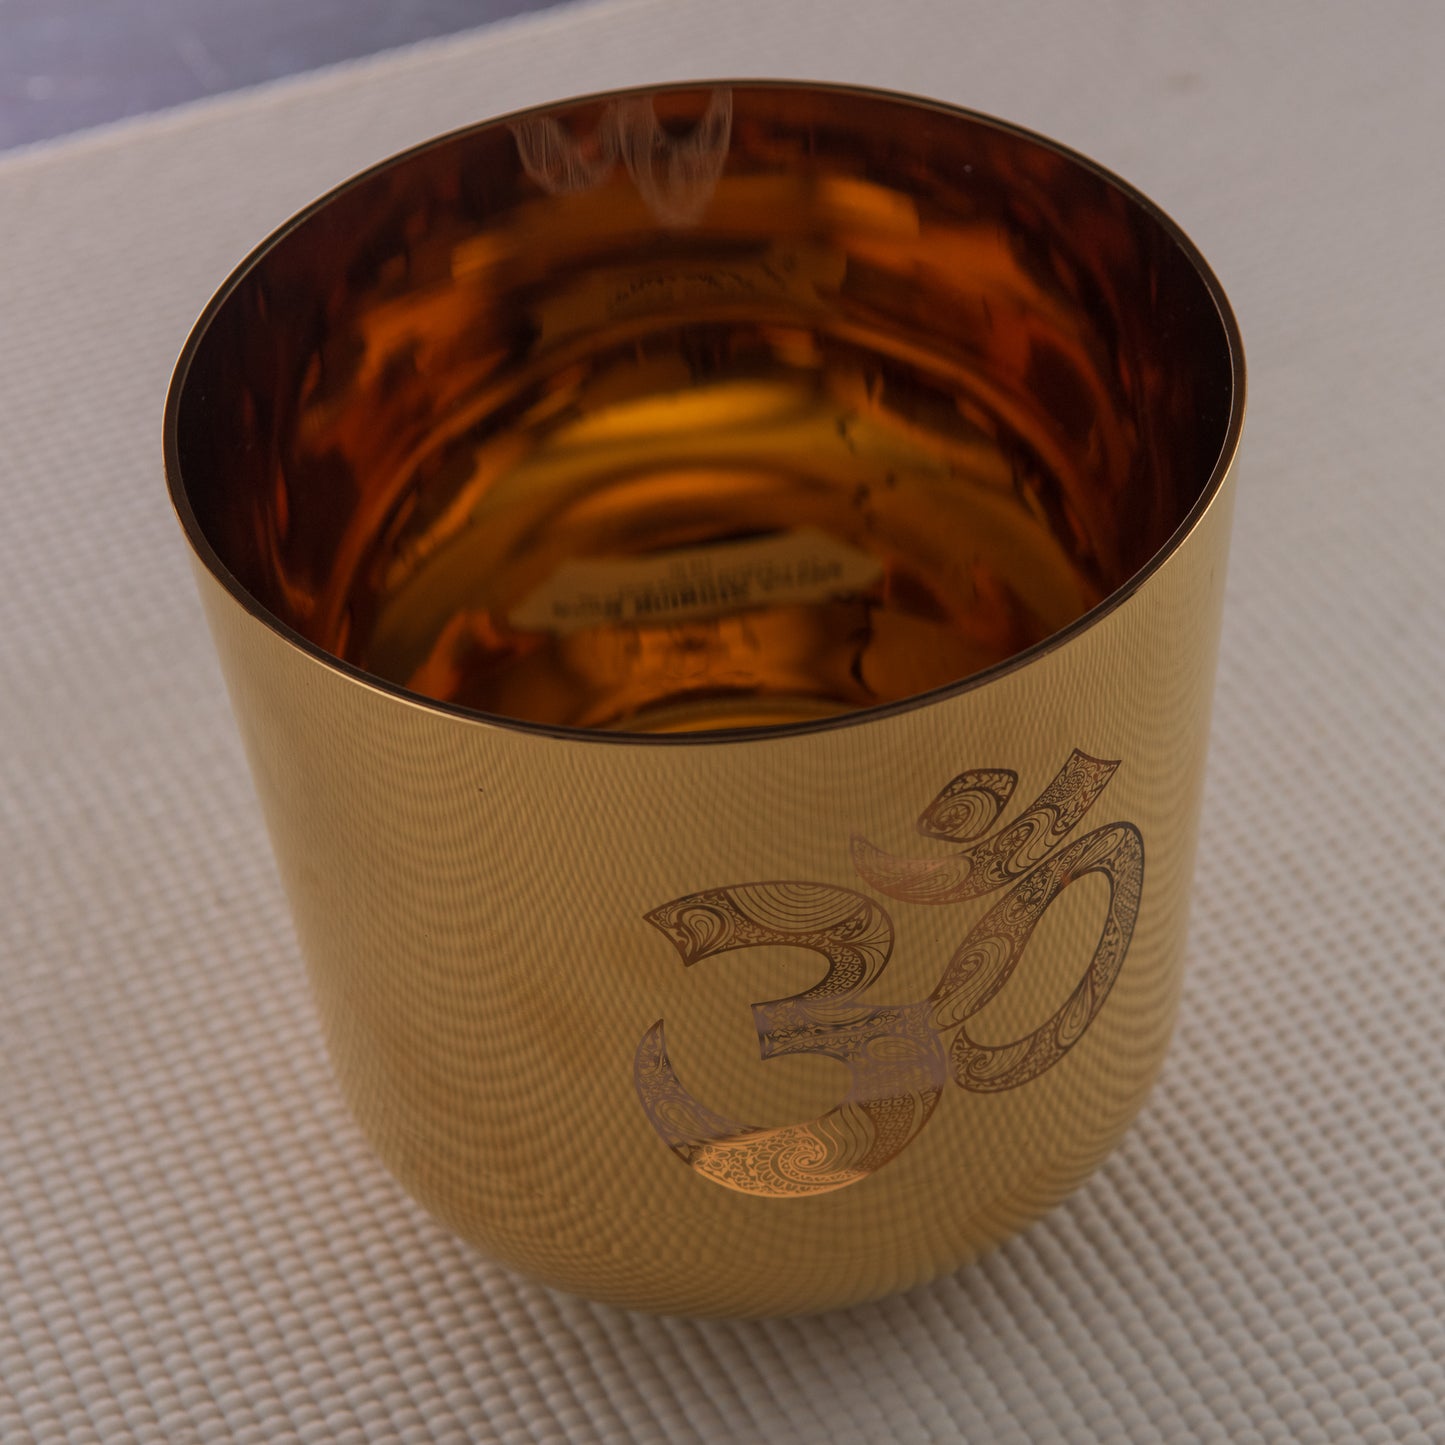 6.5" F+14 Gold Crystal Singing Bowl with Sacred Om Symbol, Sacred Singing Bowls